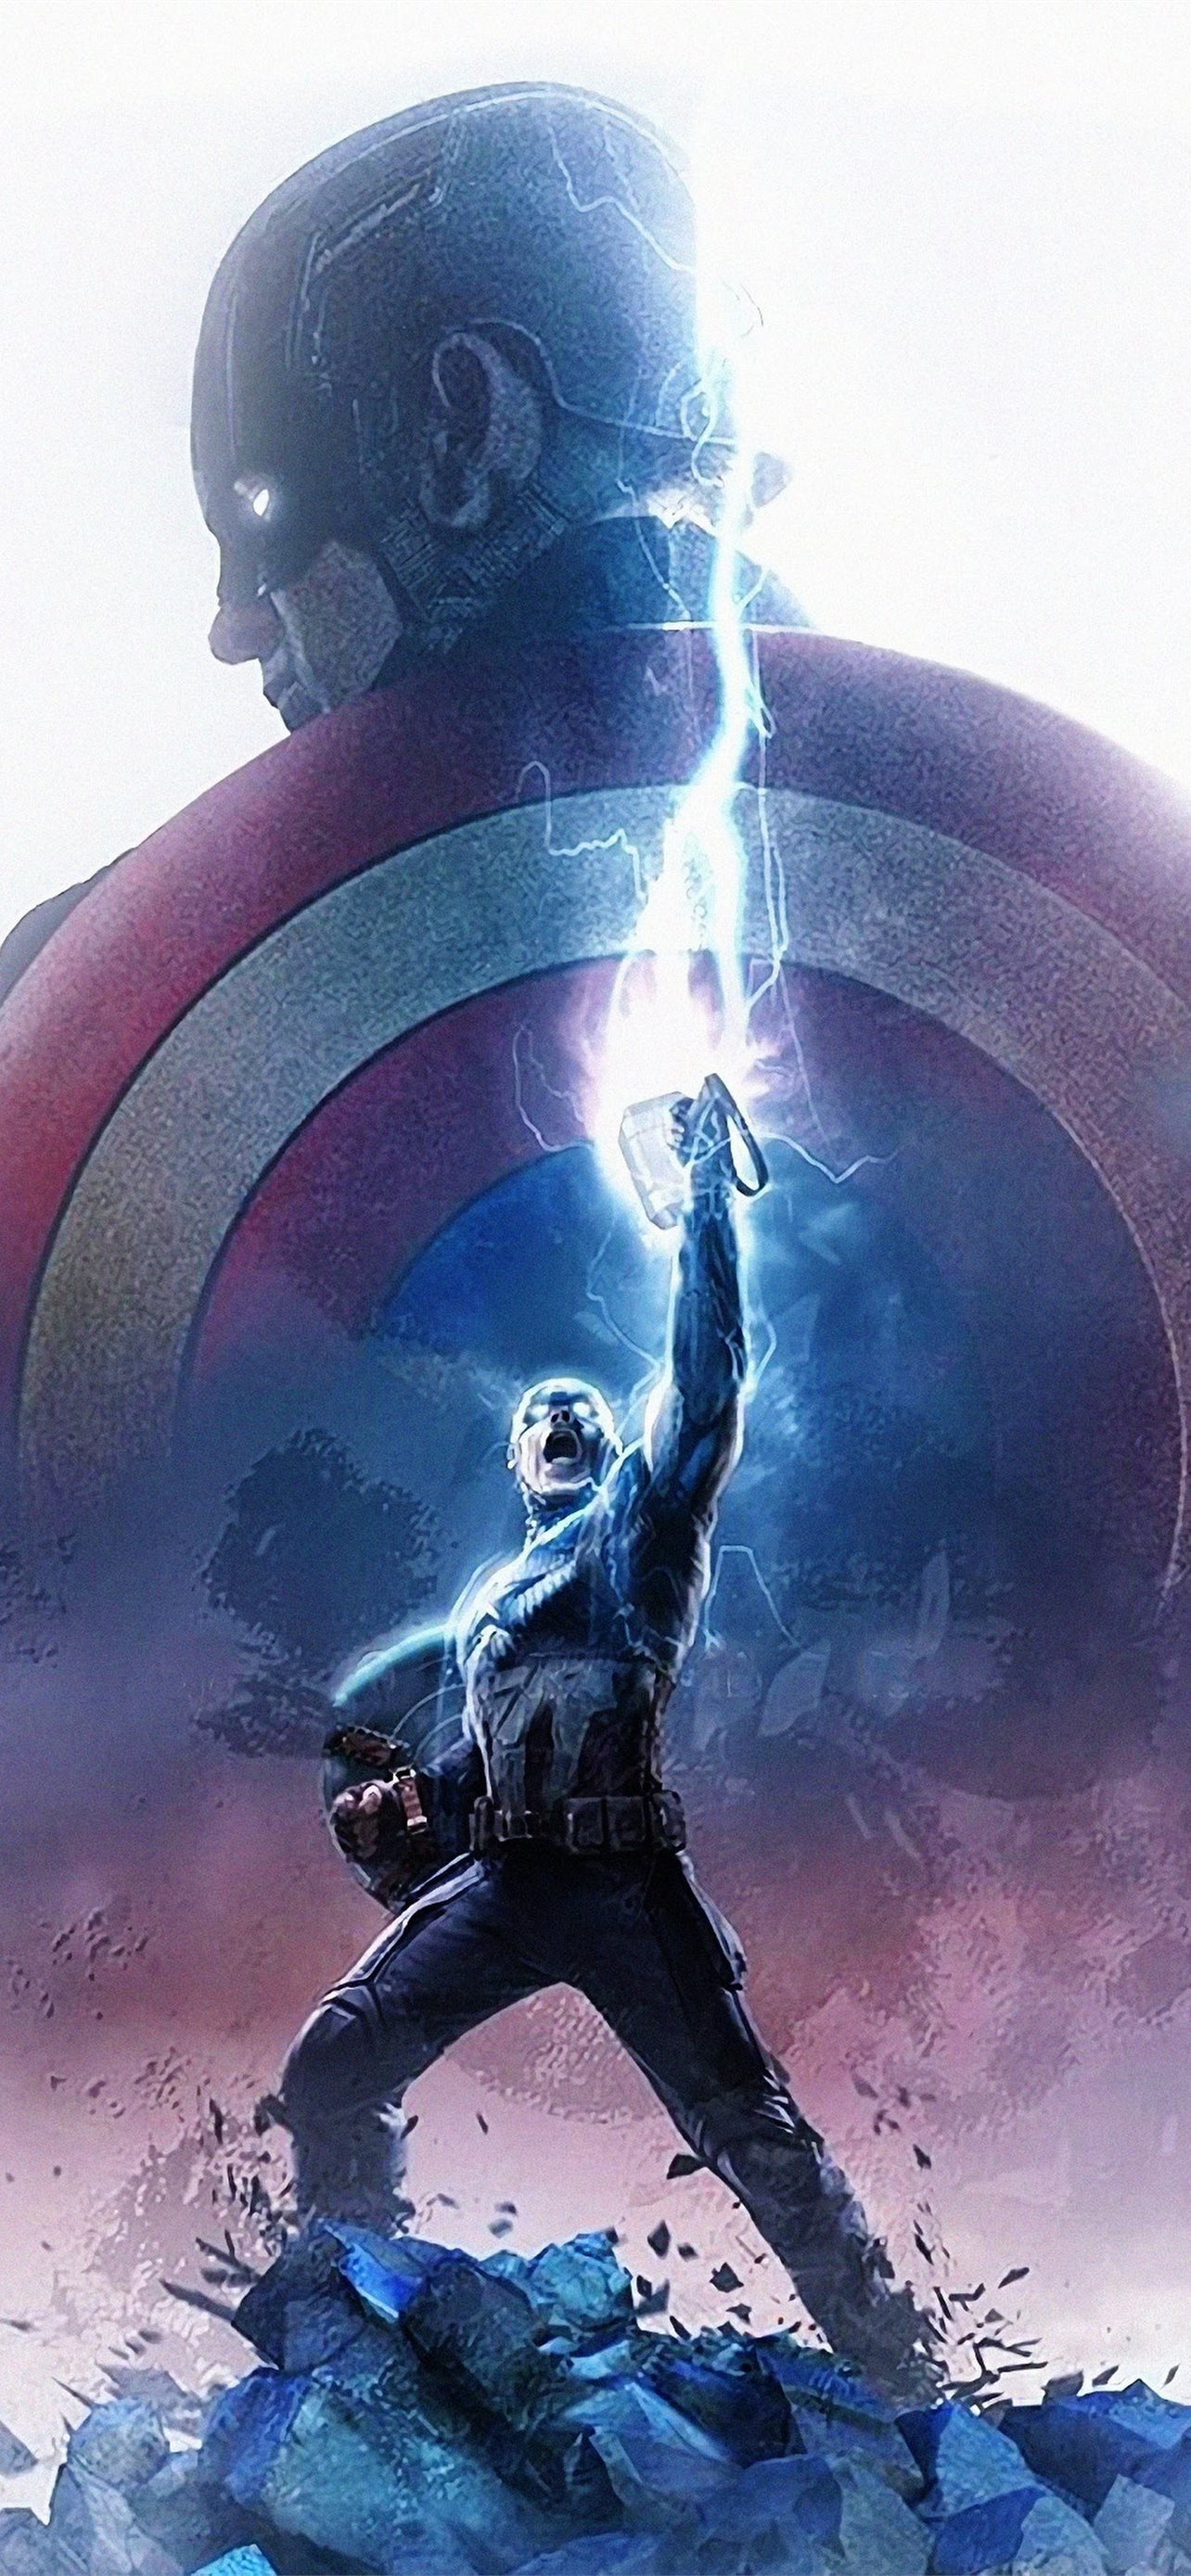 Endgame Captain America Thor Hammer Lightning 4k C... iPhone wallpaper 